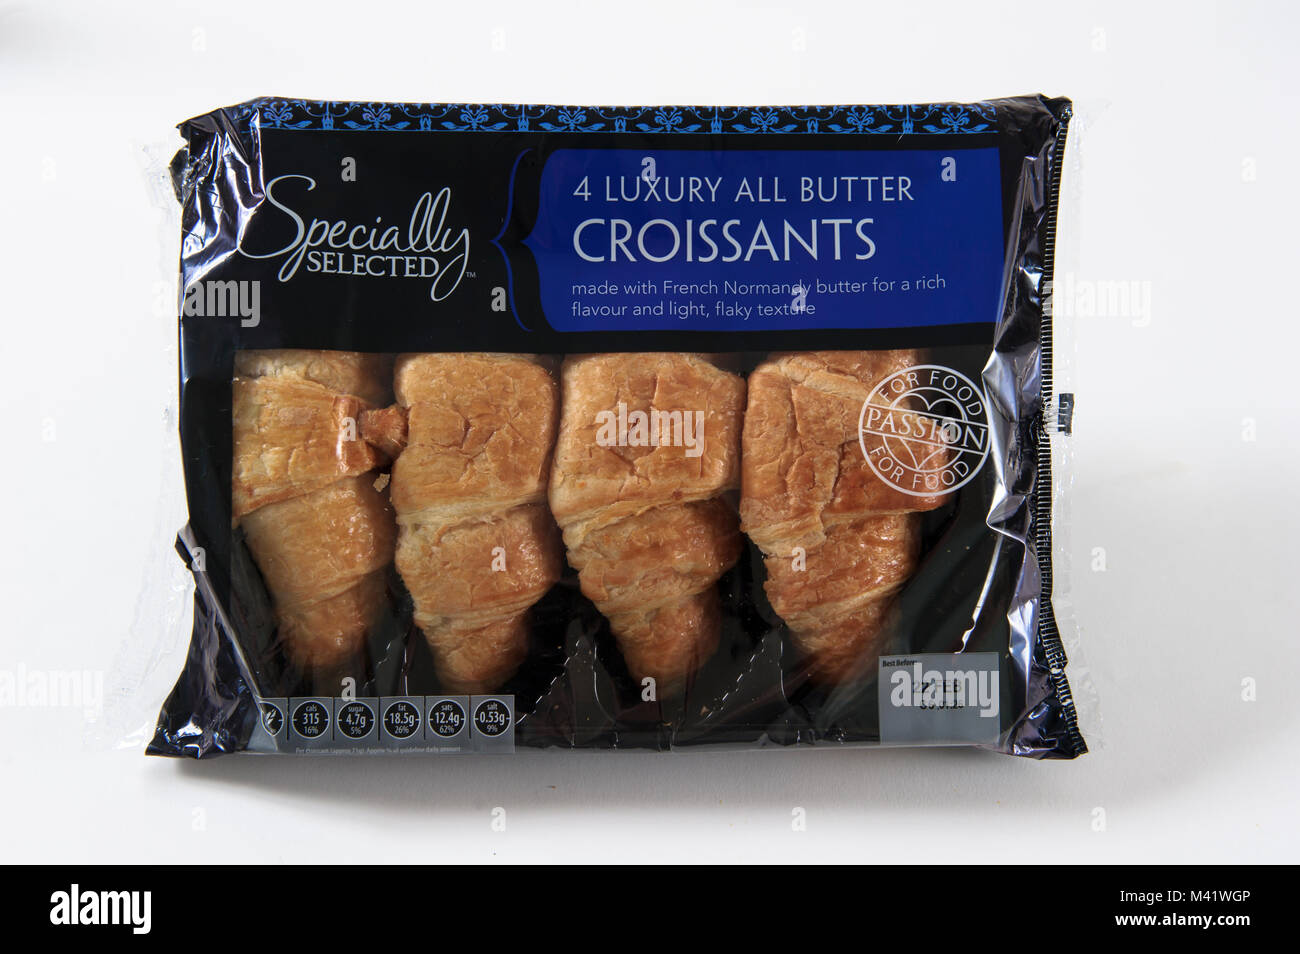 Supermarché Aldi propre marque de luxe Croissants au beurre il y a spécialement sélectionné. Banque D'Images